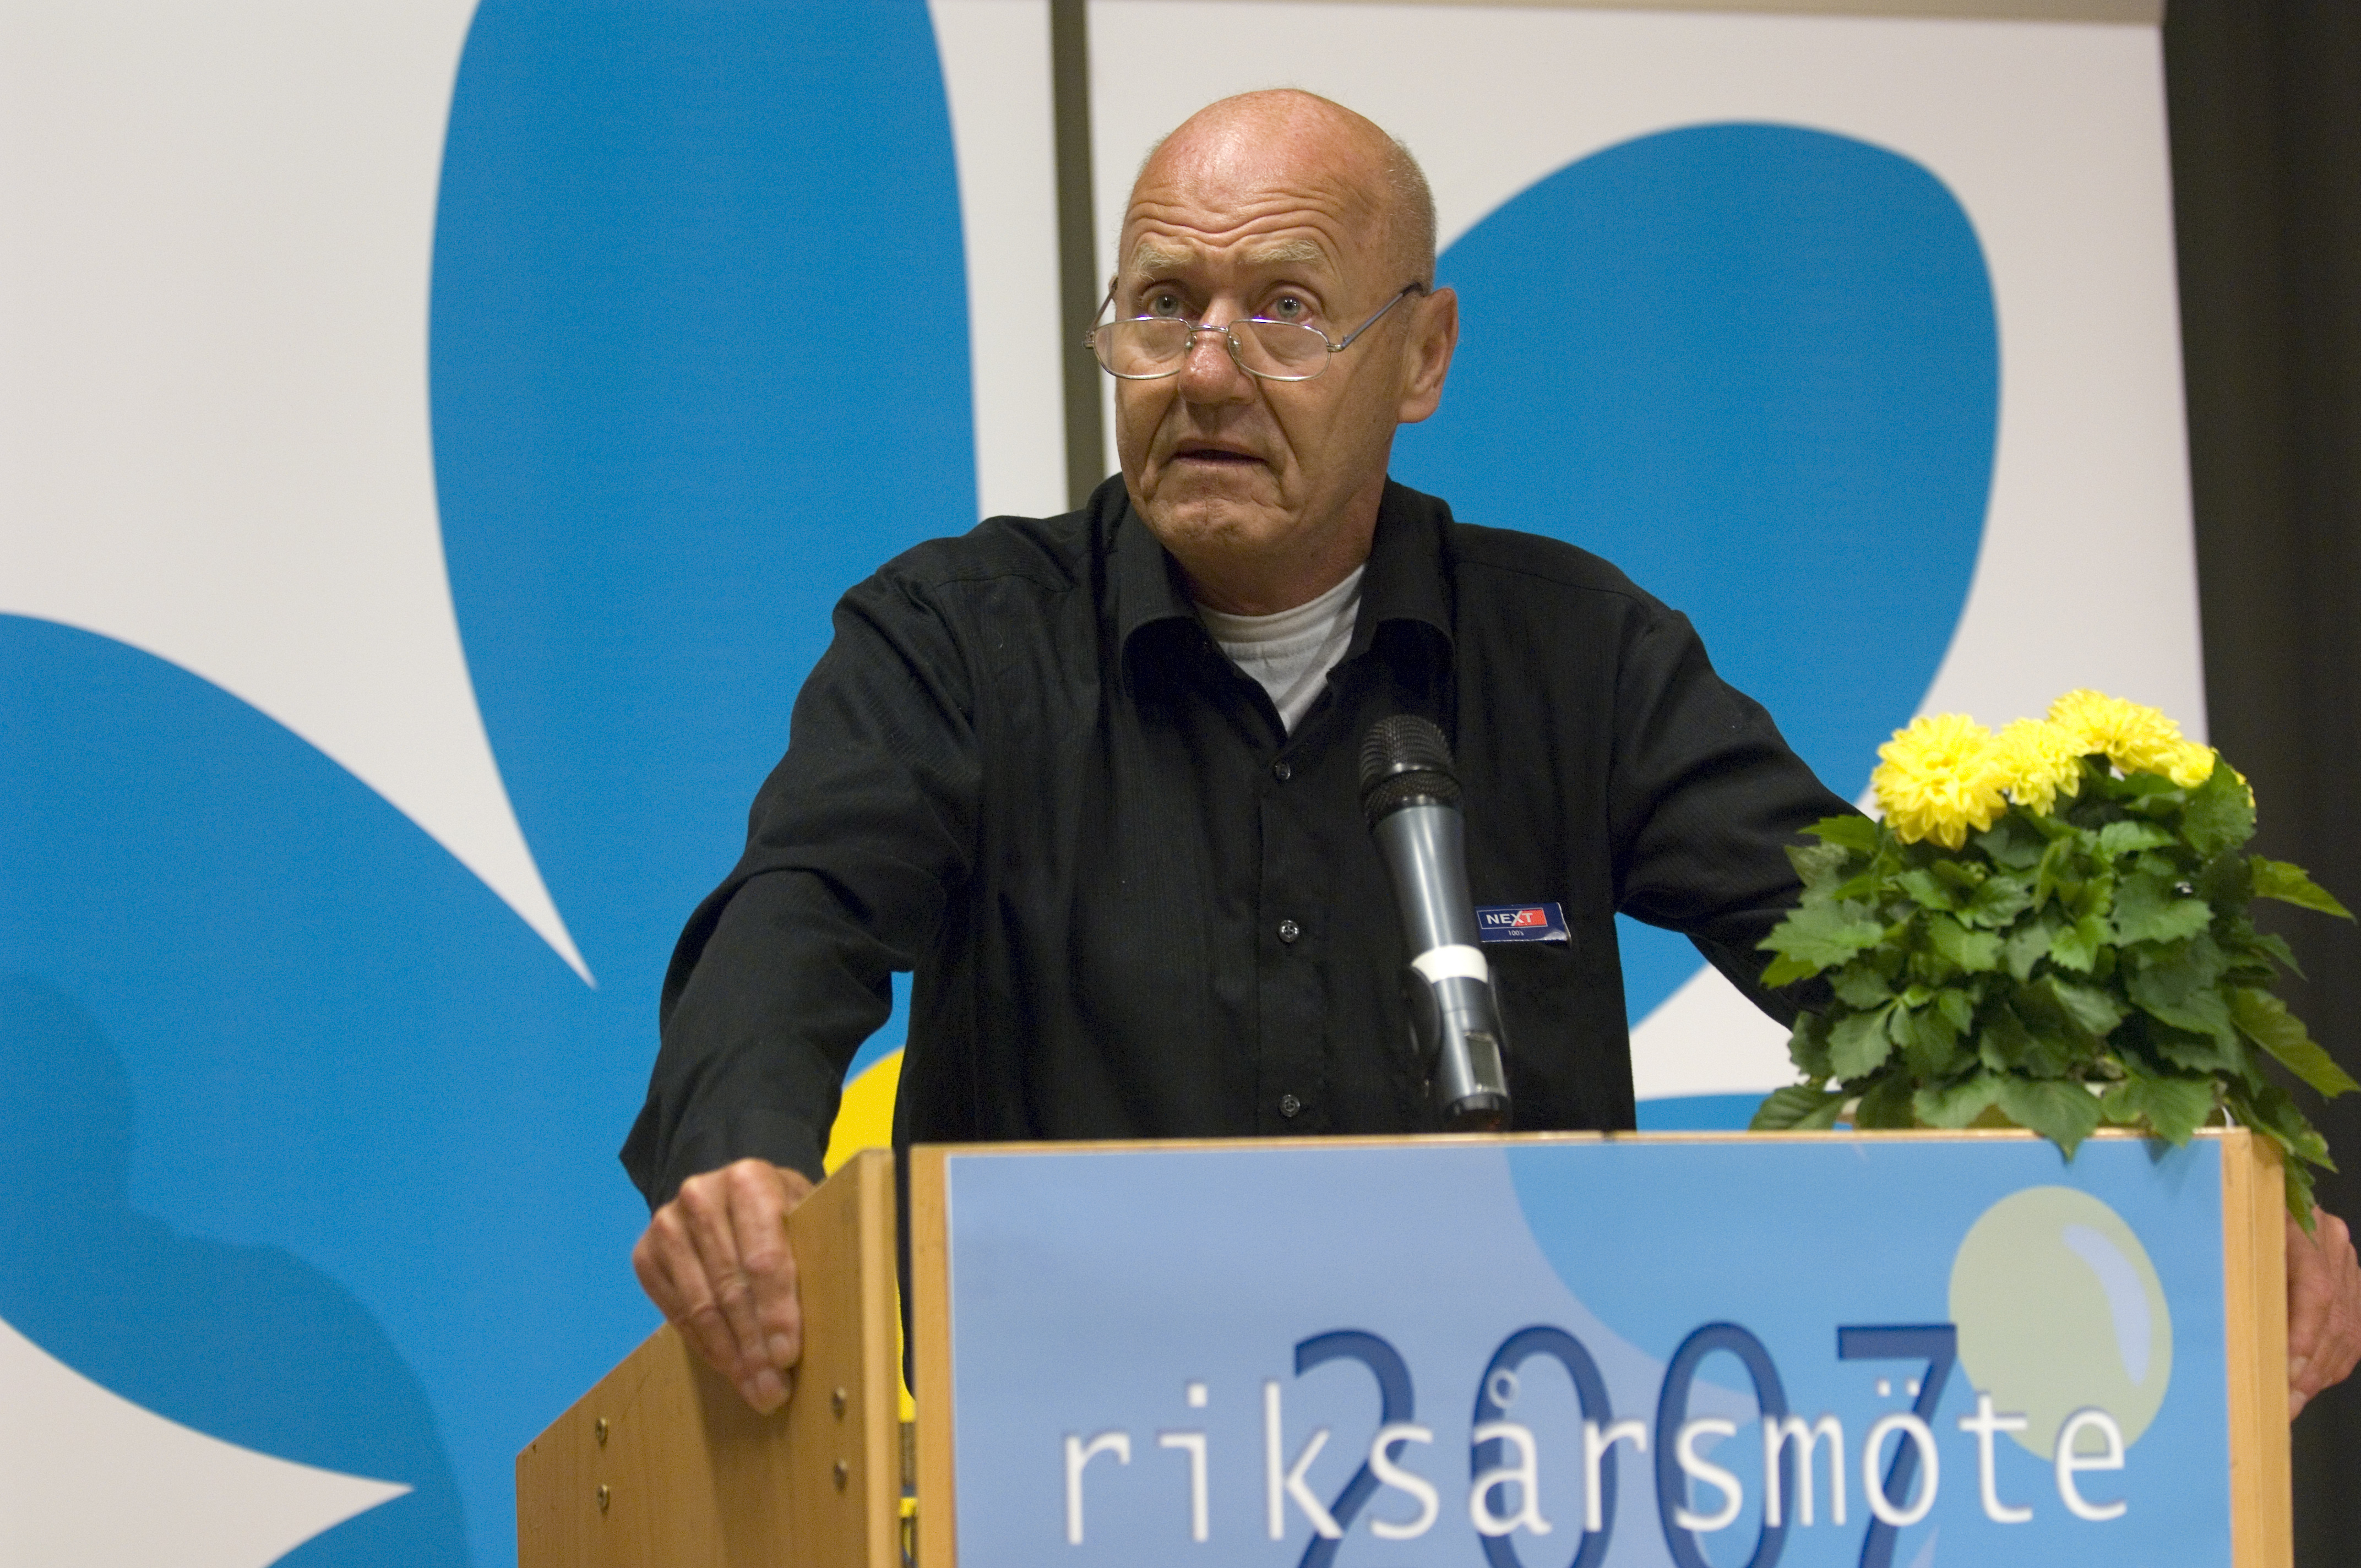 Sverigedemokraterna, Moderaterna, Avlidit, Riksdagsvalet 2010, Död, Sten Andersson, Avliden